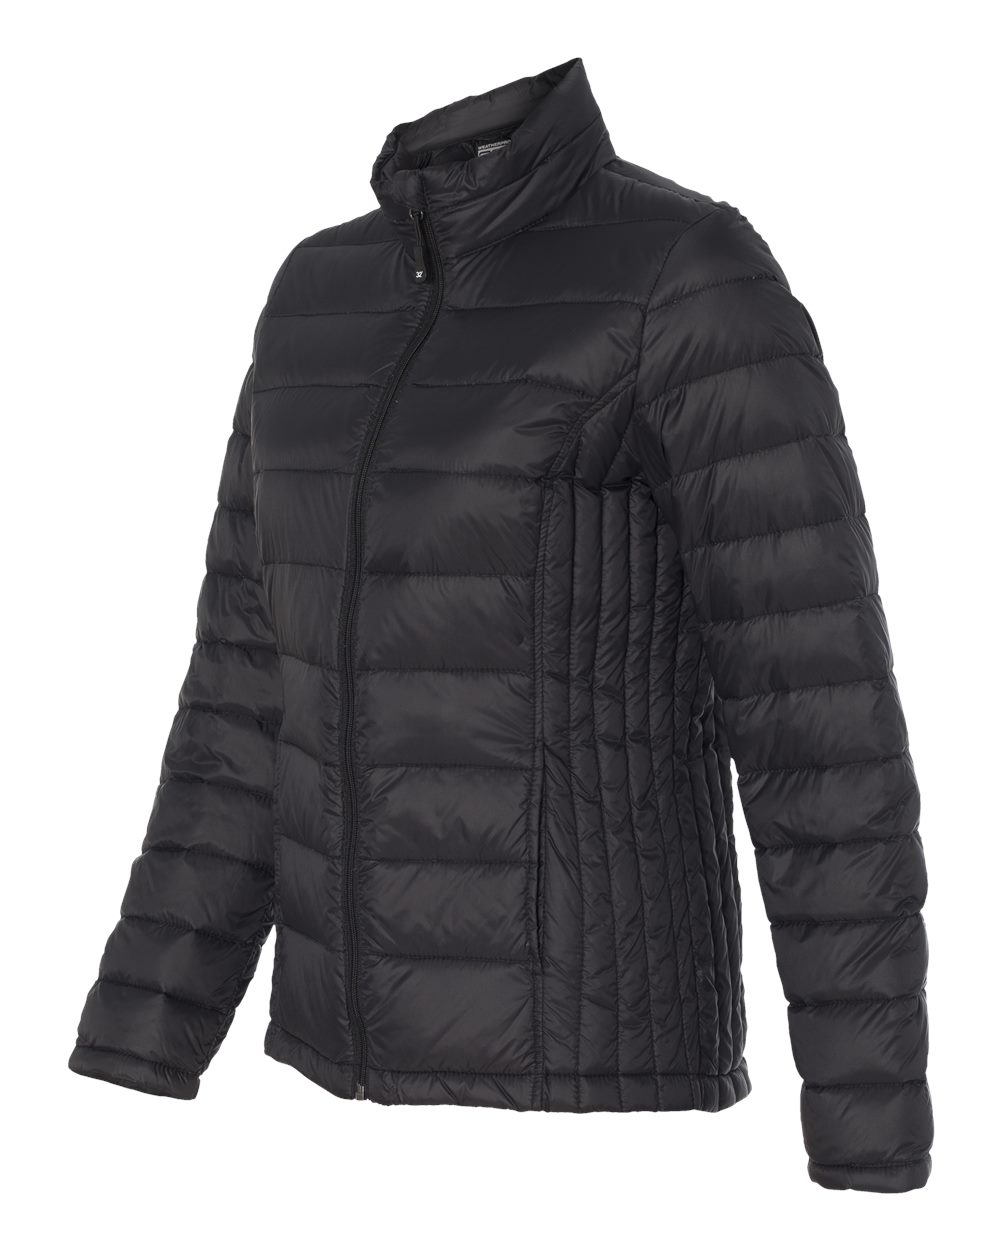 Weatherproof 15600W - Women's 32 Degrees Packable Down Jacket